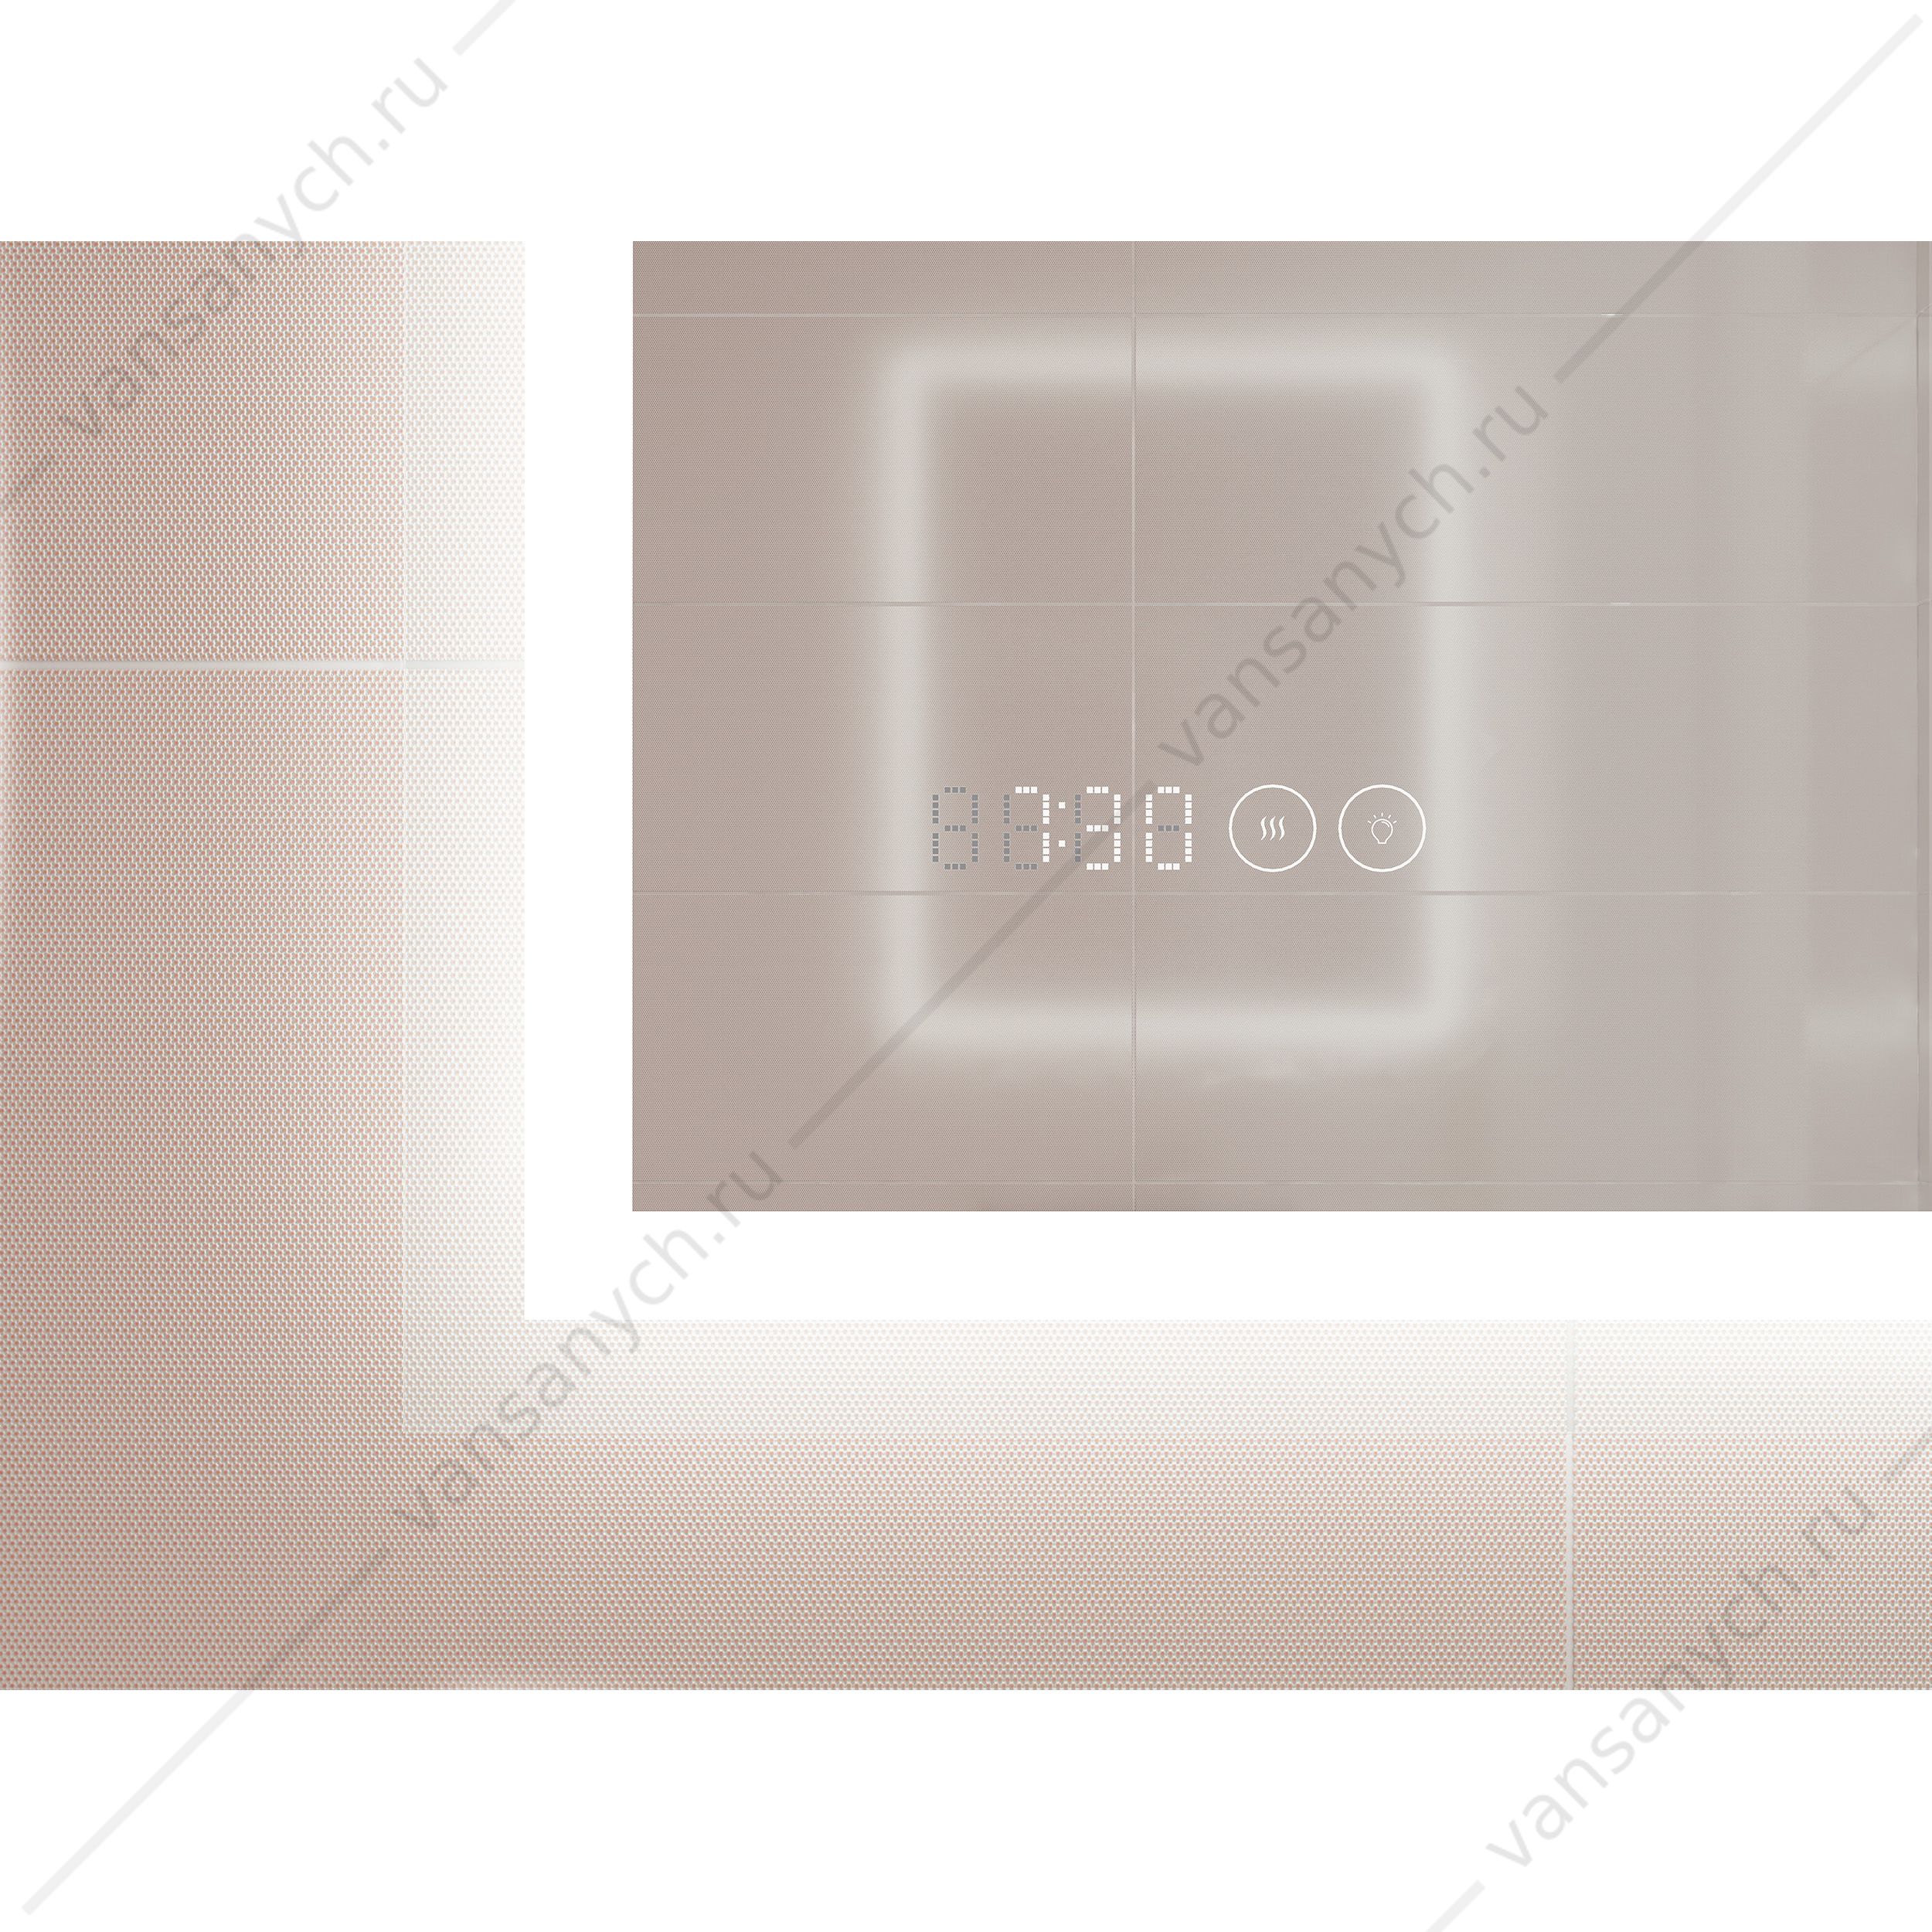 00-00004102 Зеркало LED 080 design pro 60x85 подсветка, часы, антизапотевание Cersanit KN-LU-LED080*60-p-Os Cersanit (Польша) купить в Тюмени (Ван Саныч™)